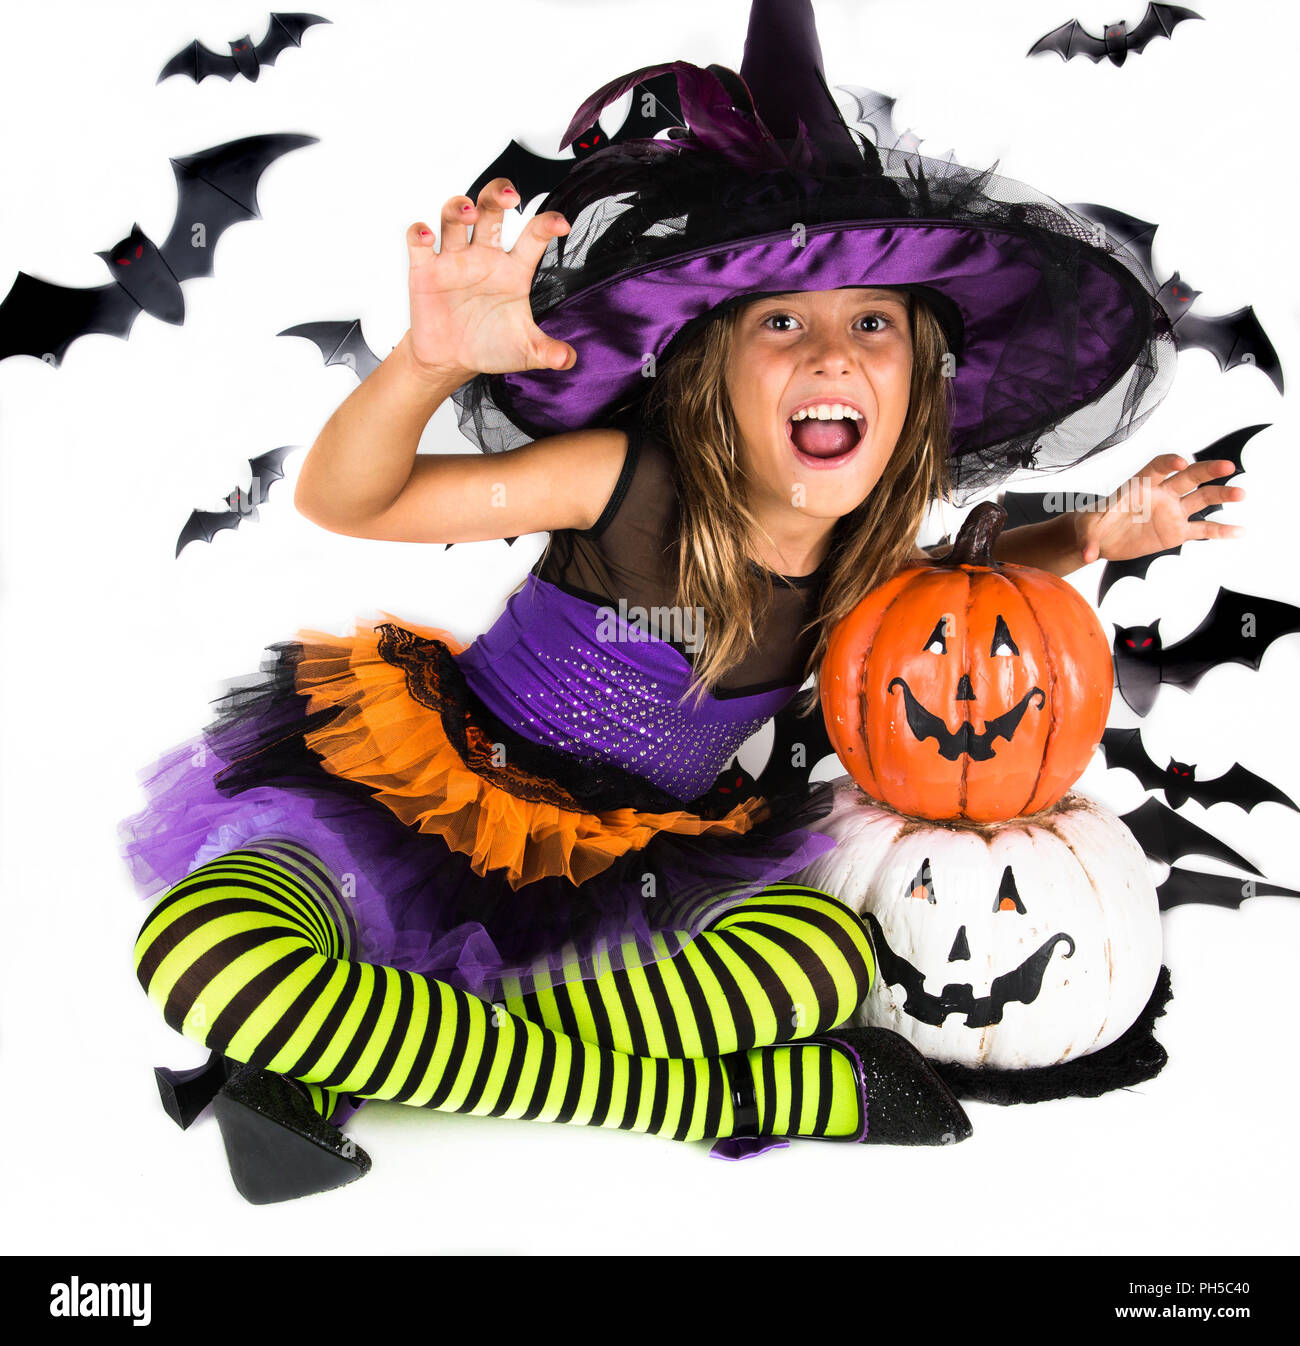 Happy Halloween strega & felice di zucca. Bambina con un costume di Halloween di una strega con cappello, striped gambe tenendo due smiley zucche di Halloween Foto Stock